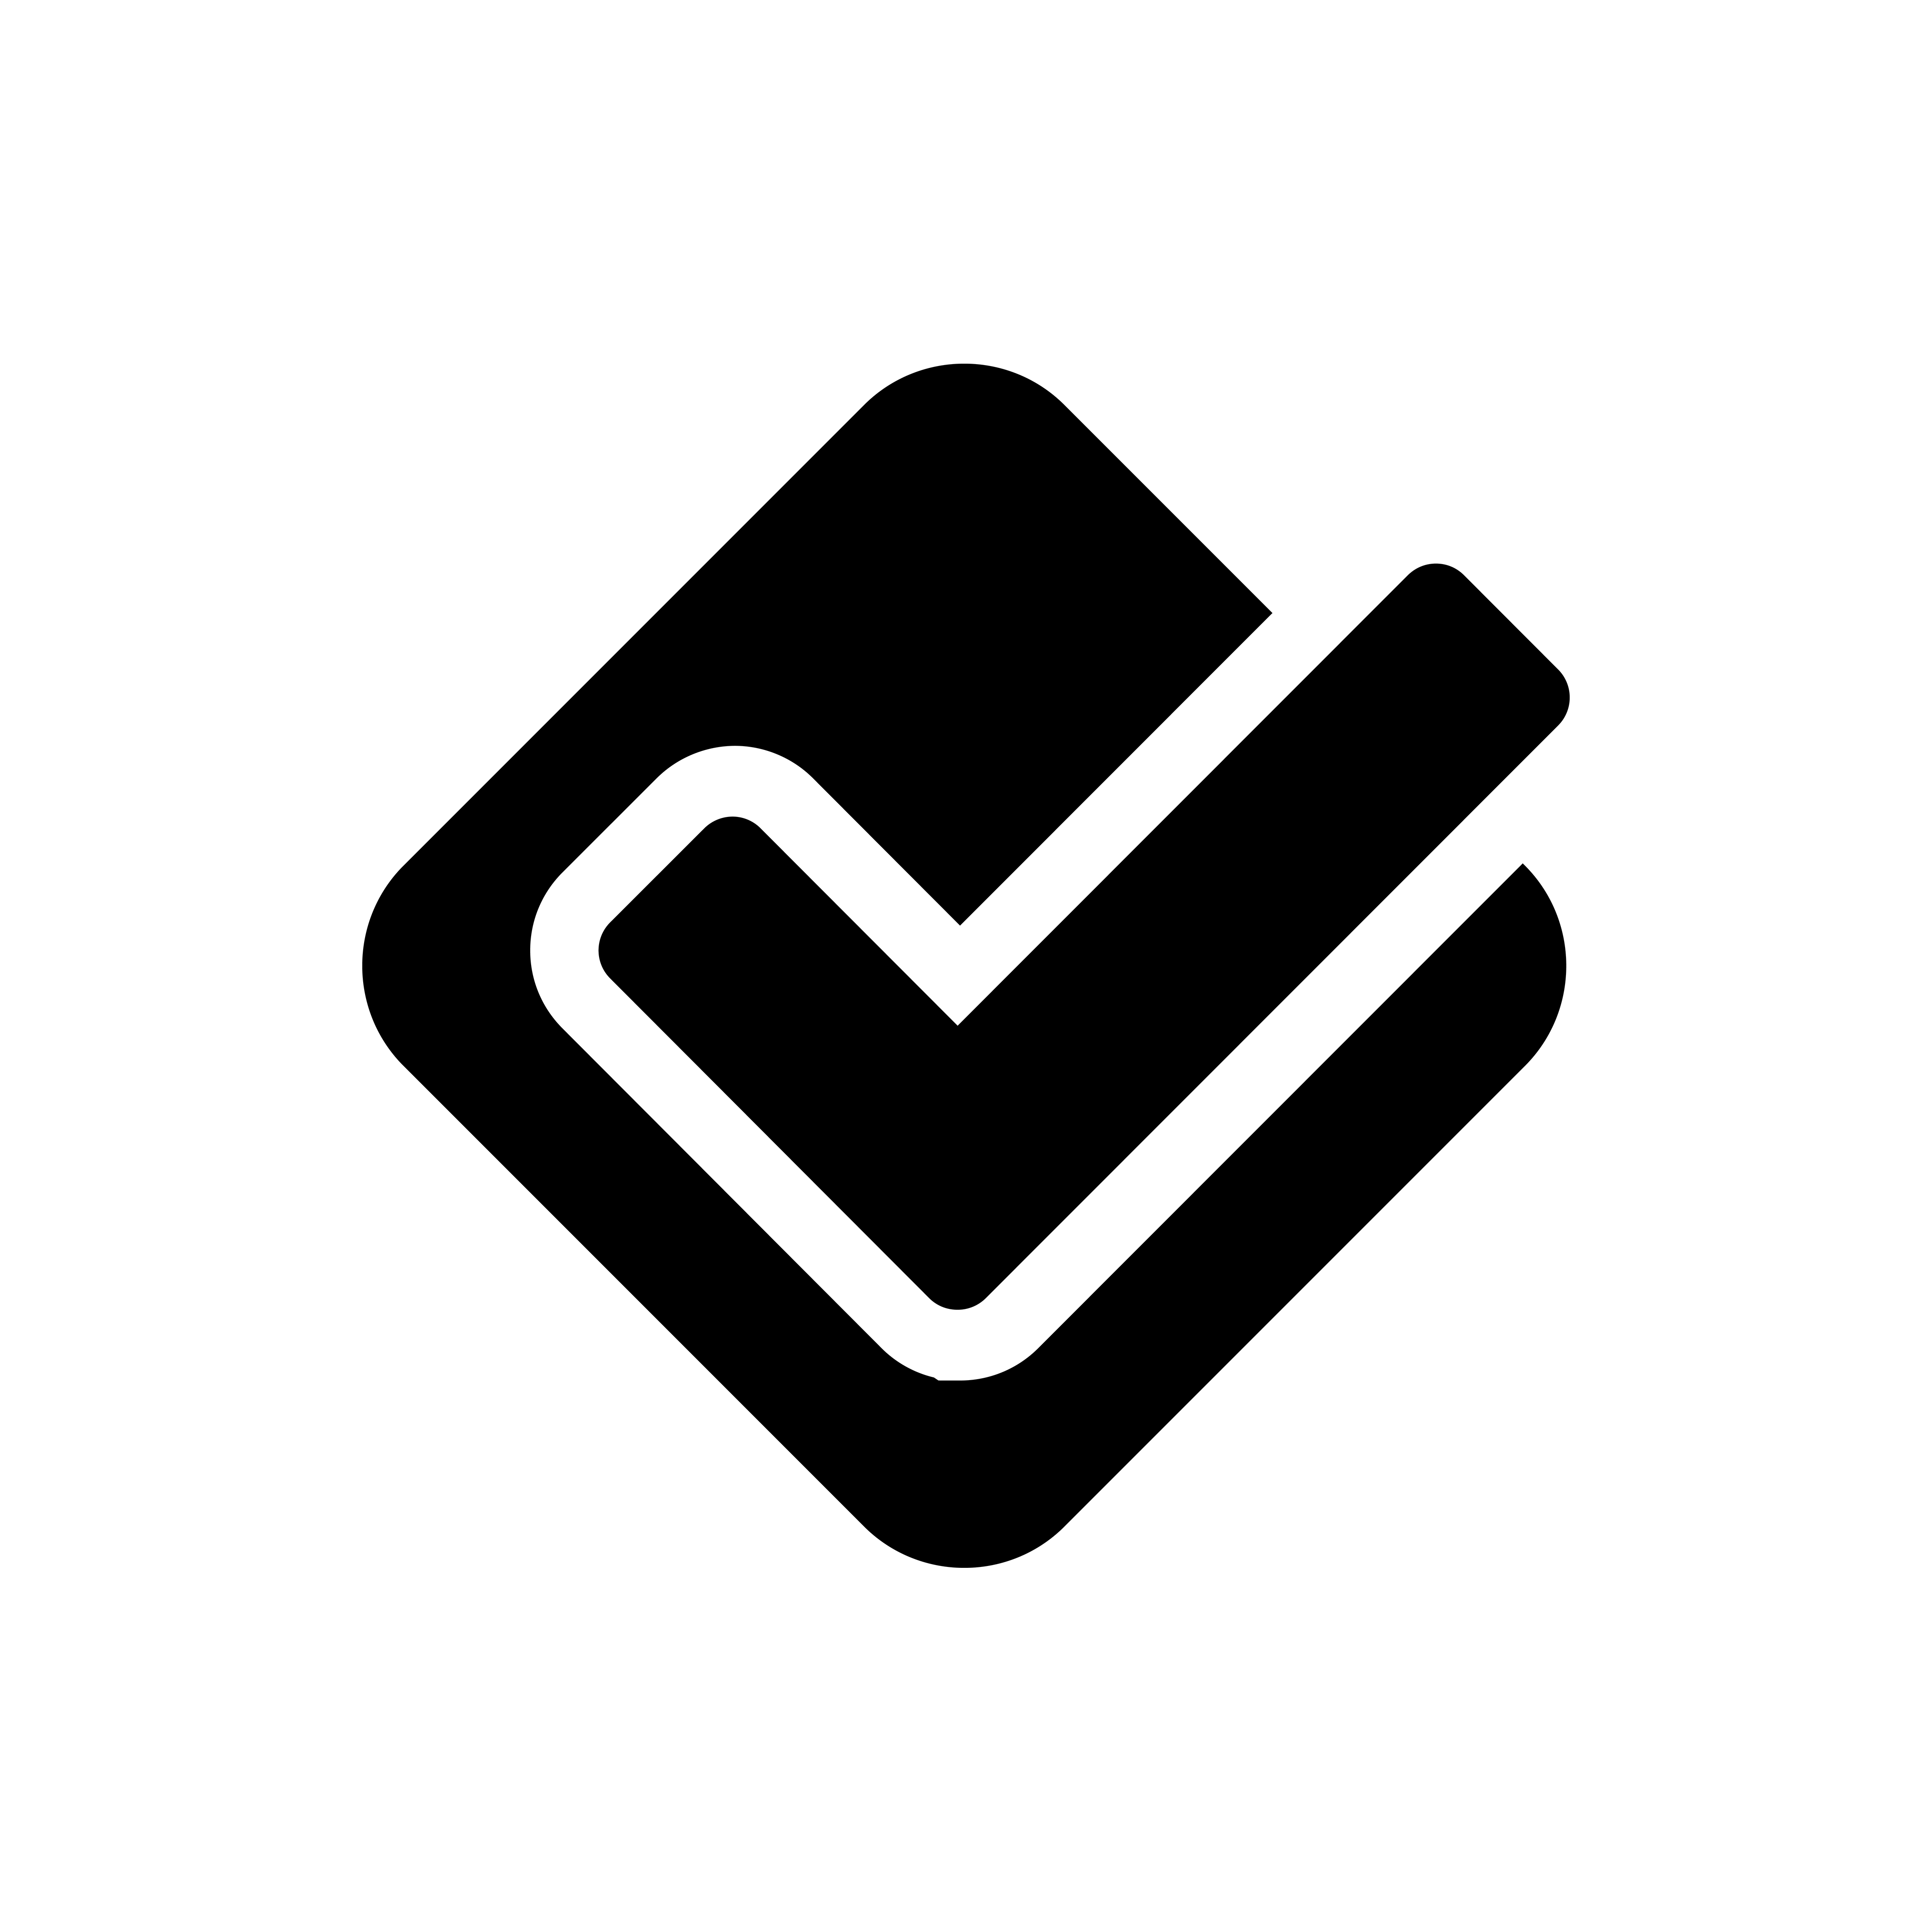 Black and White Foursquare Icon